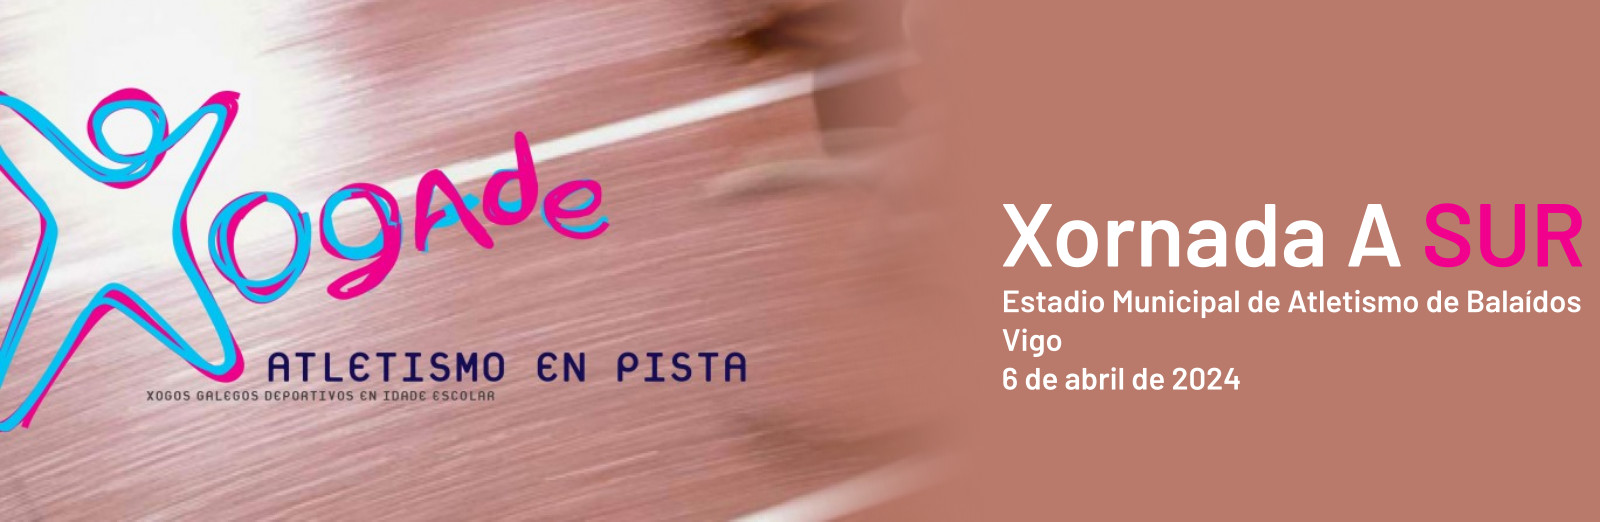  XOGADE Vigo : III Xornada Atletismo en pista - PROGRAMA A.  Estadio Municipal de Atletismo de Balaídos, 6 abril 2024